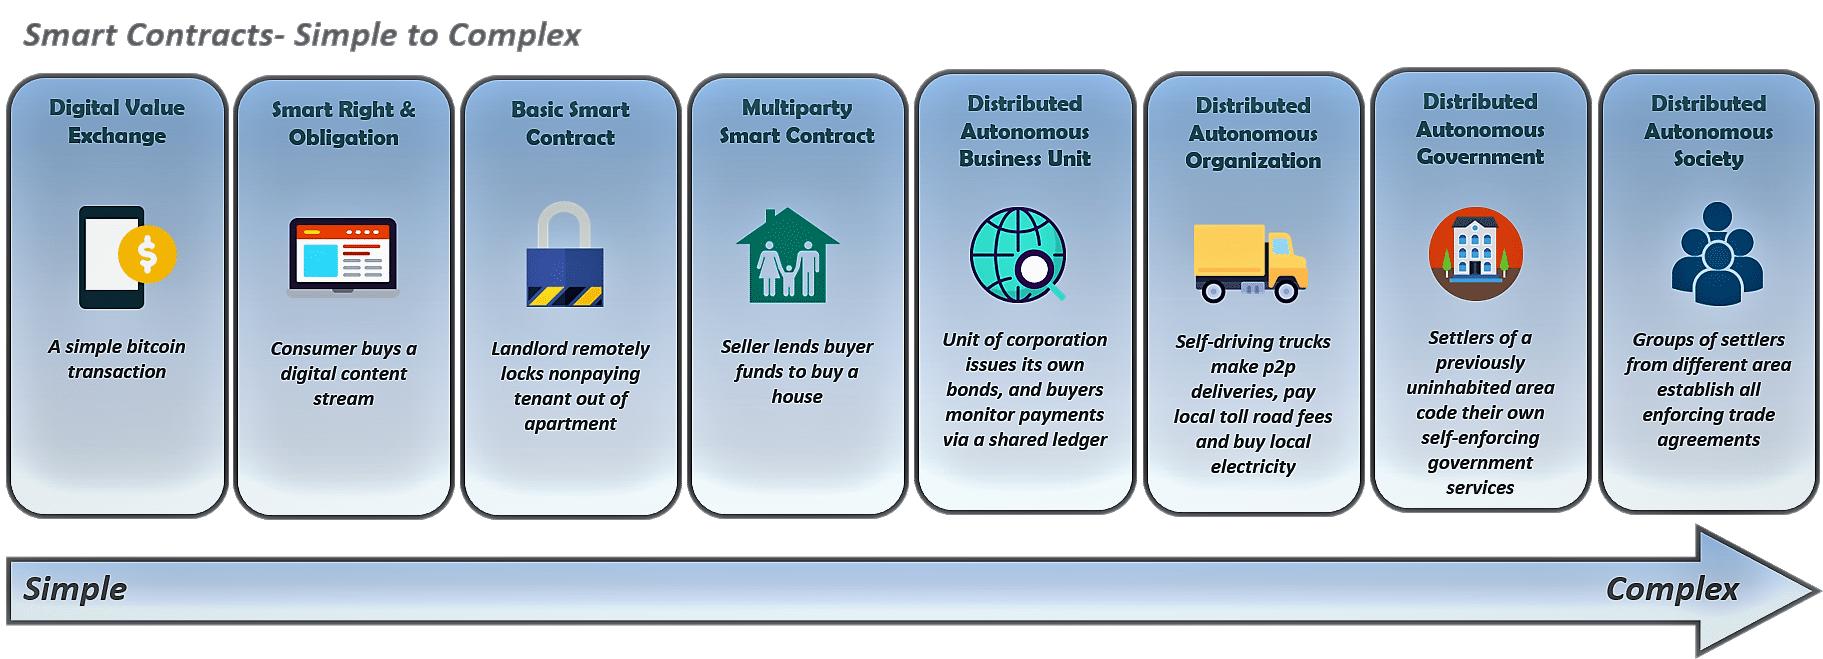 Ứng dụng của Smart Contract - Hợp đồng thông minh